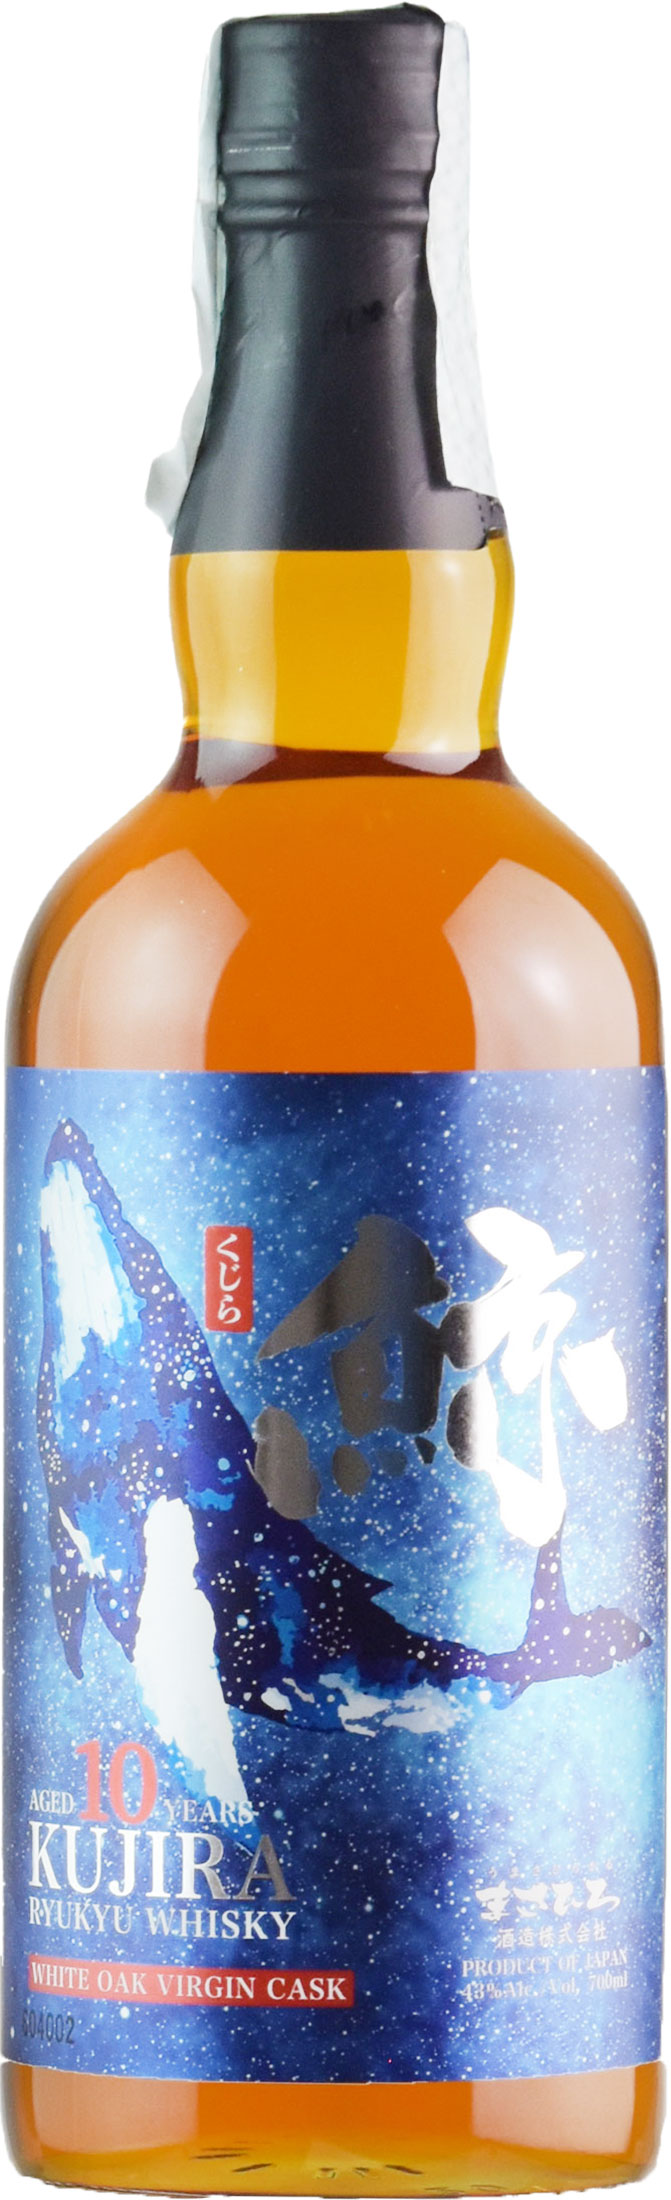 Shin Group Kujira Ryukyu Whisky 10 Anni White Oak Virgin Cask